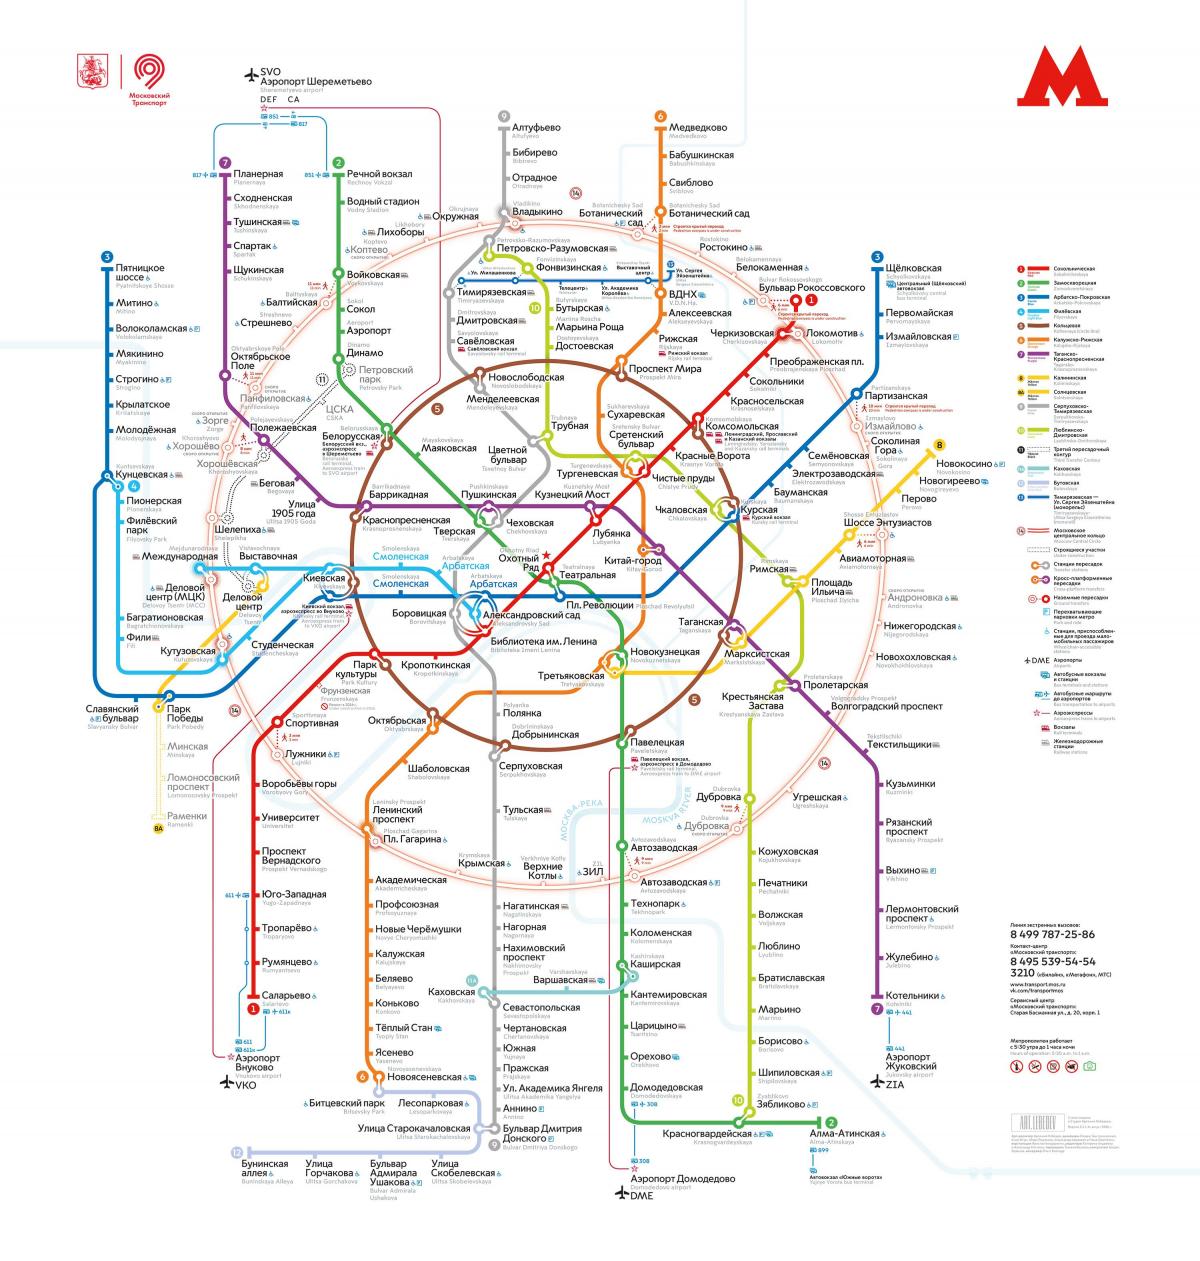 मास्को मेट्रो का नक्शा